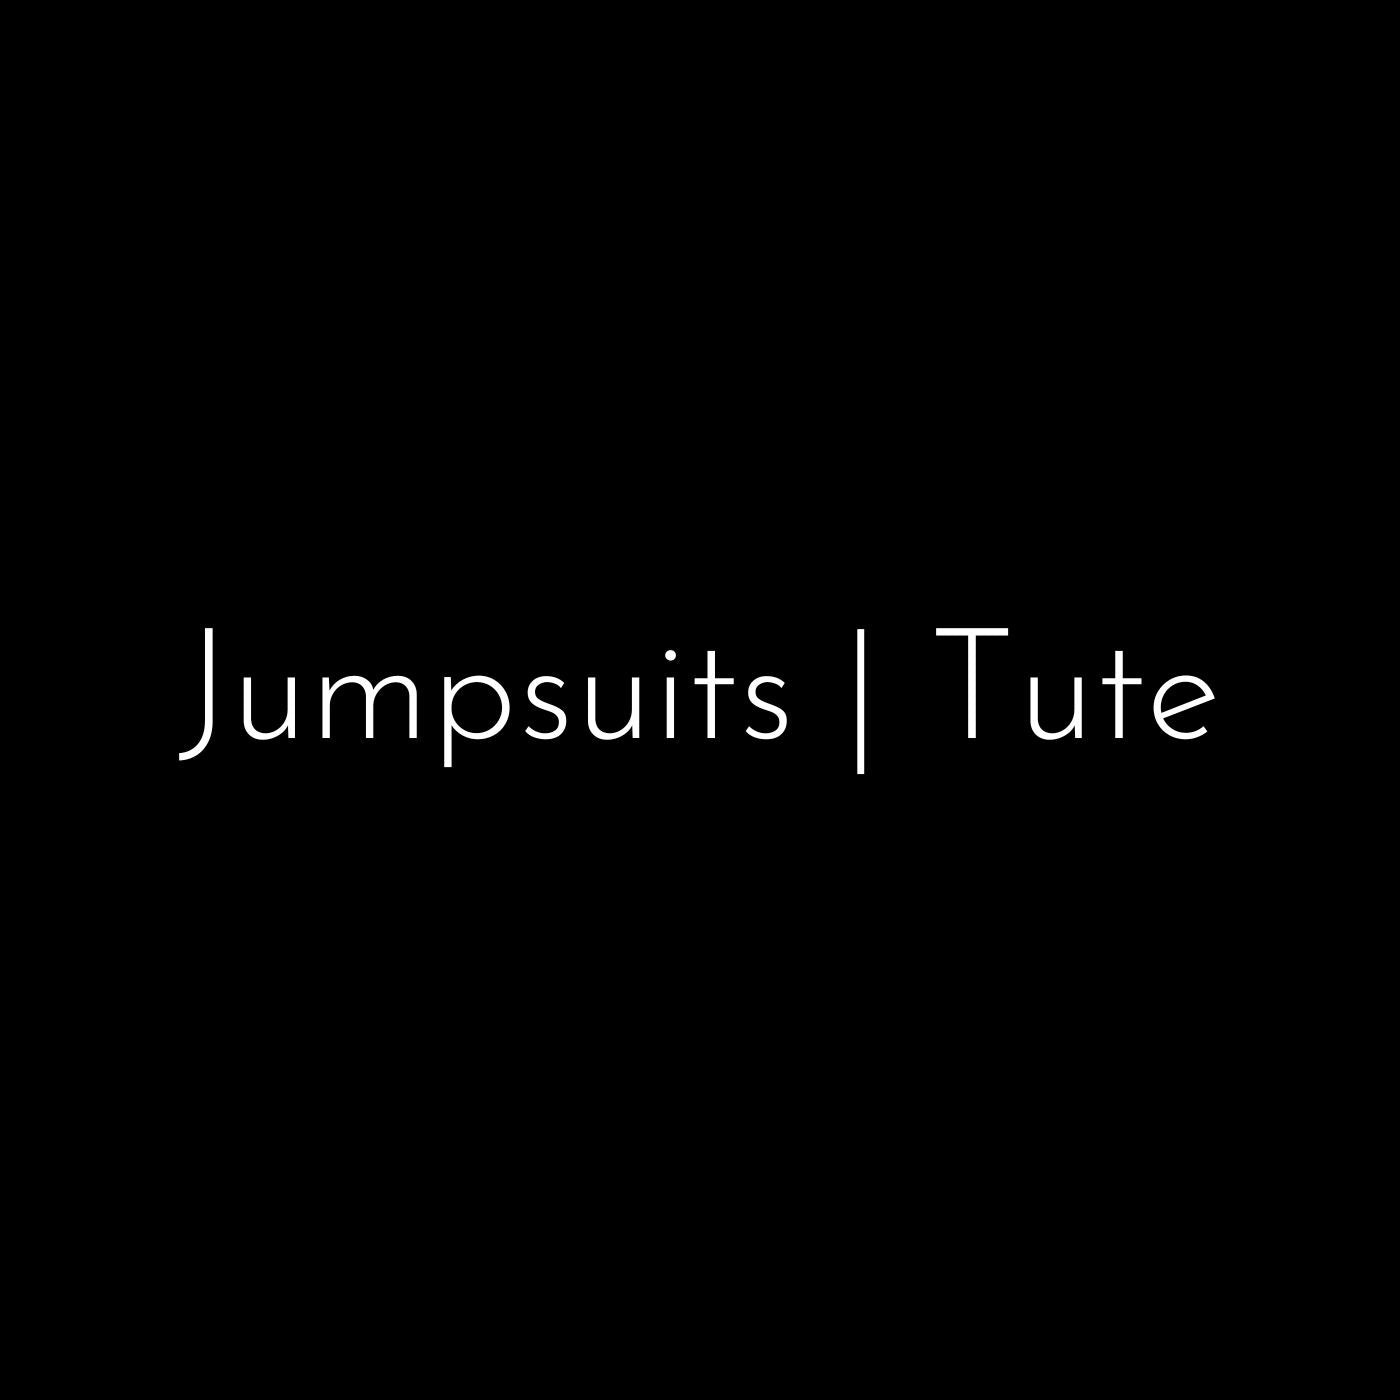 Jumpsuits | Tute